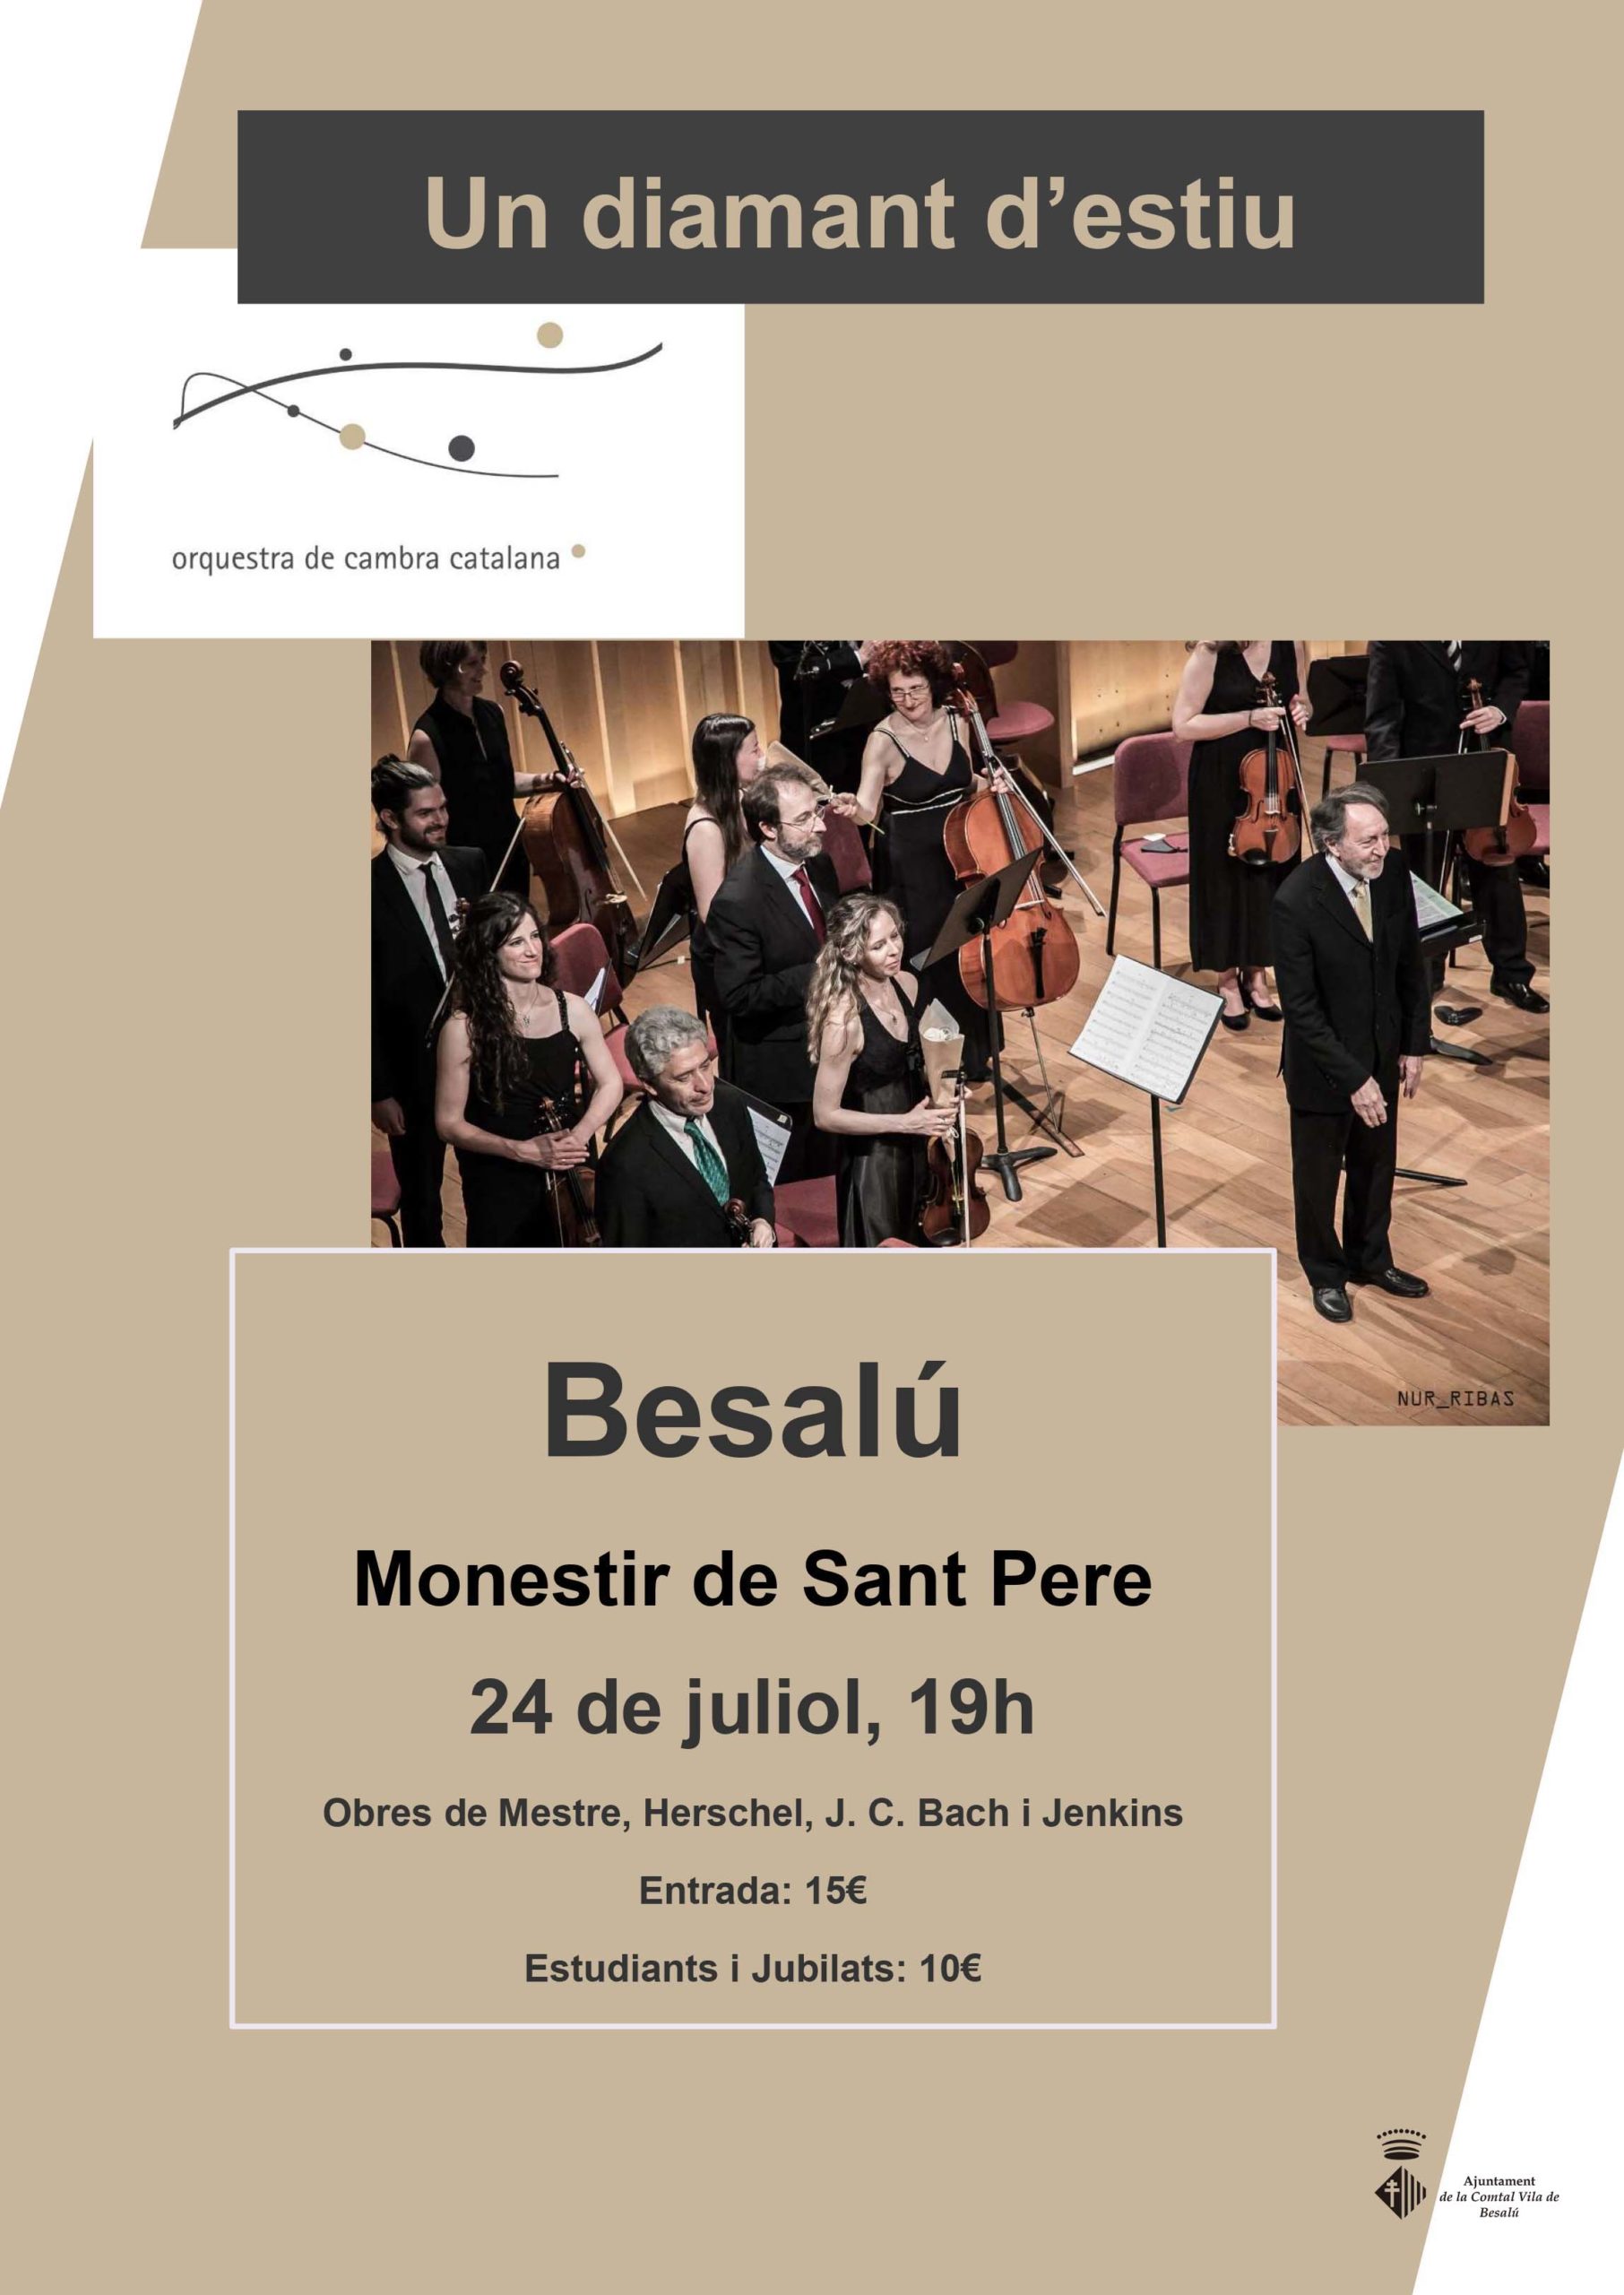 Un diamant d'estiu Concert de l'Orquestra de Cambra Catalana